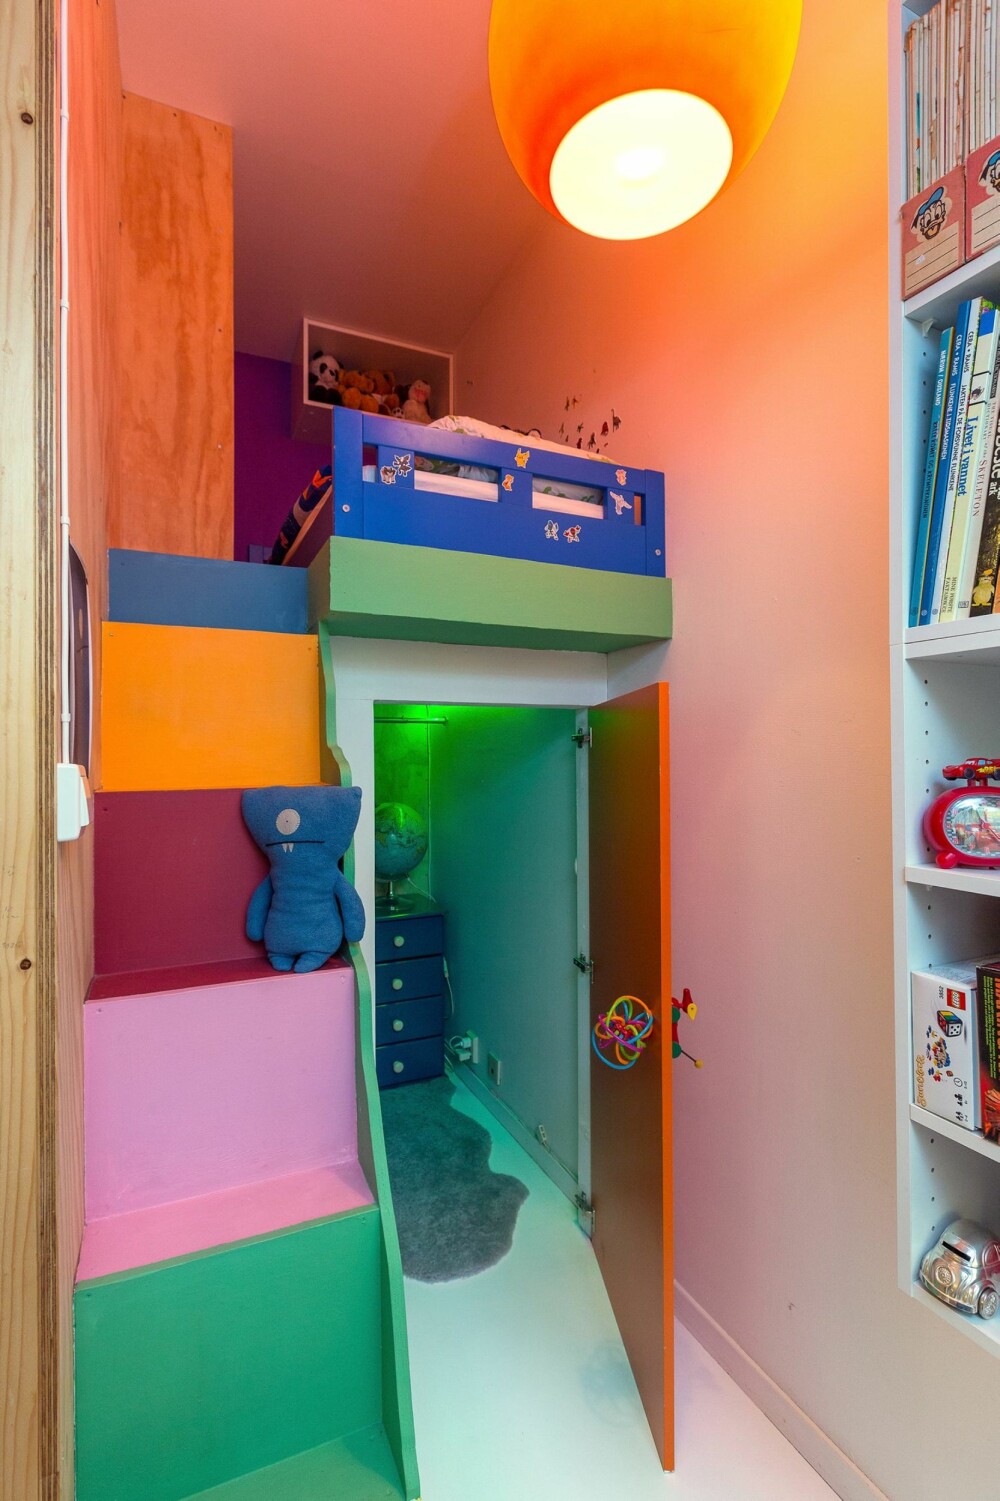 BARNEROM: På barnerommet har arkitekten satt inn en opphøyd seng slik at det blir plass til oppbevaring av klær under sengen.